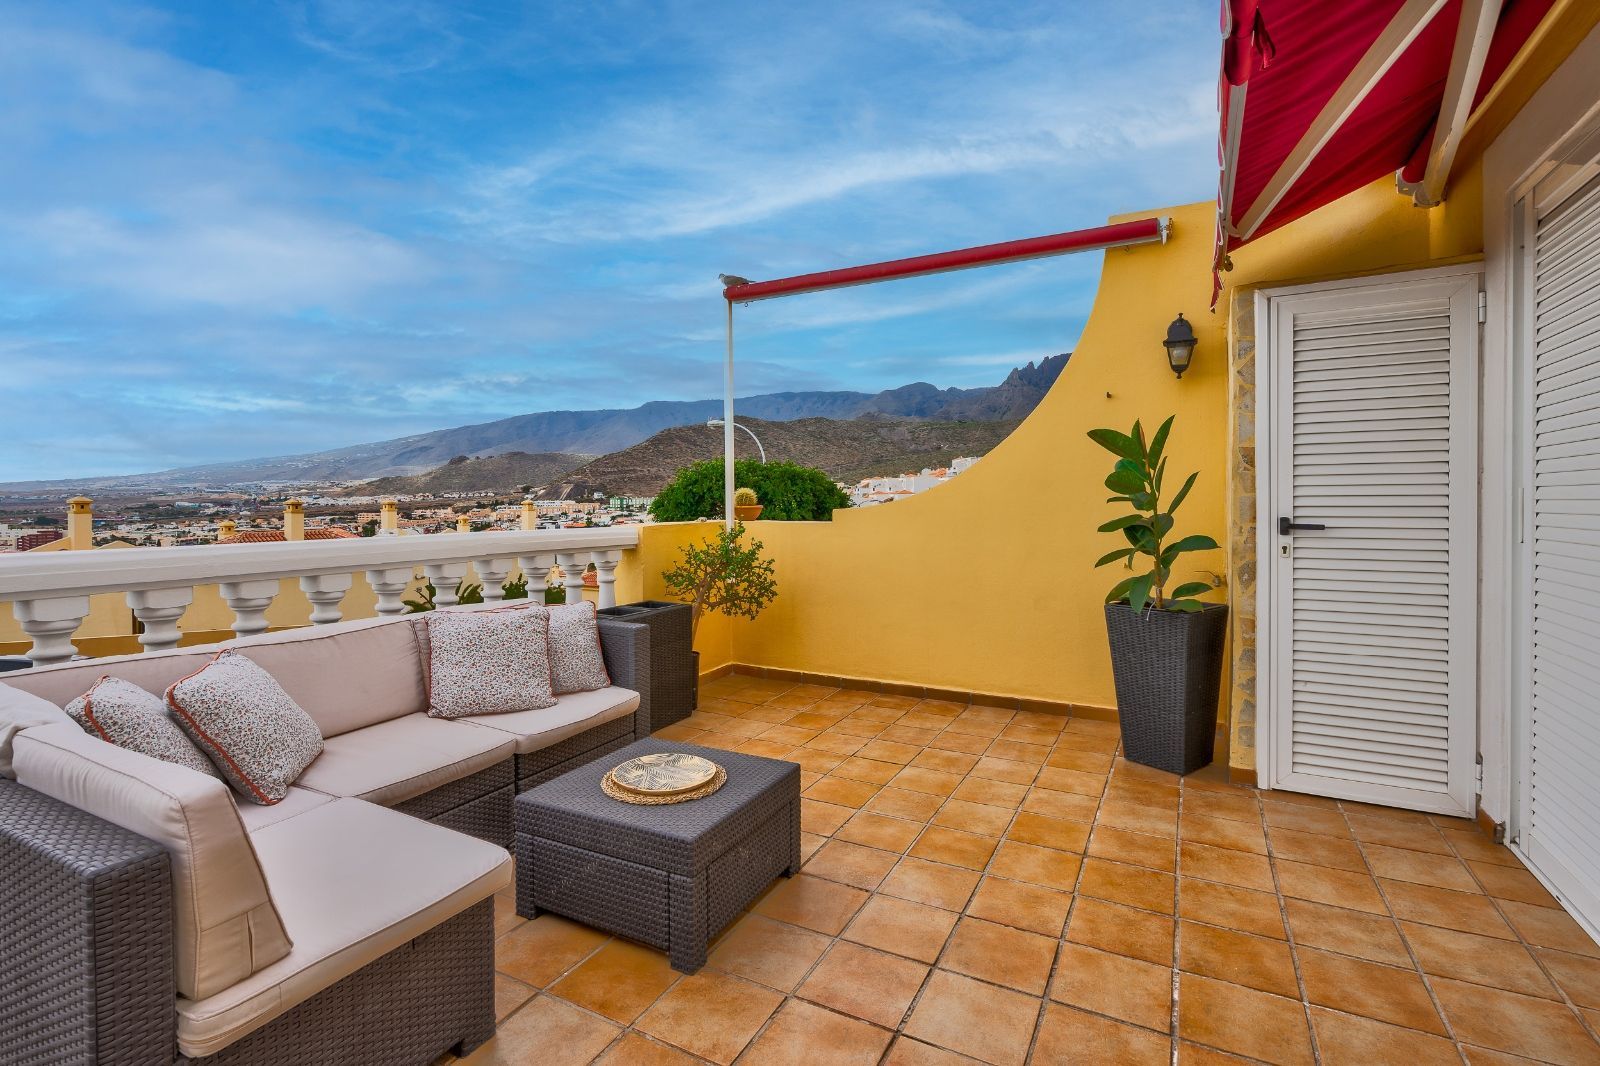 Appartement te koop in Tenerife 2